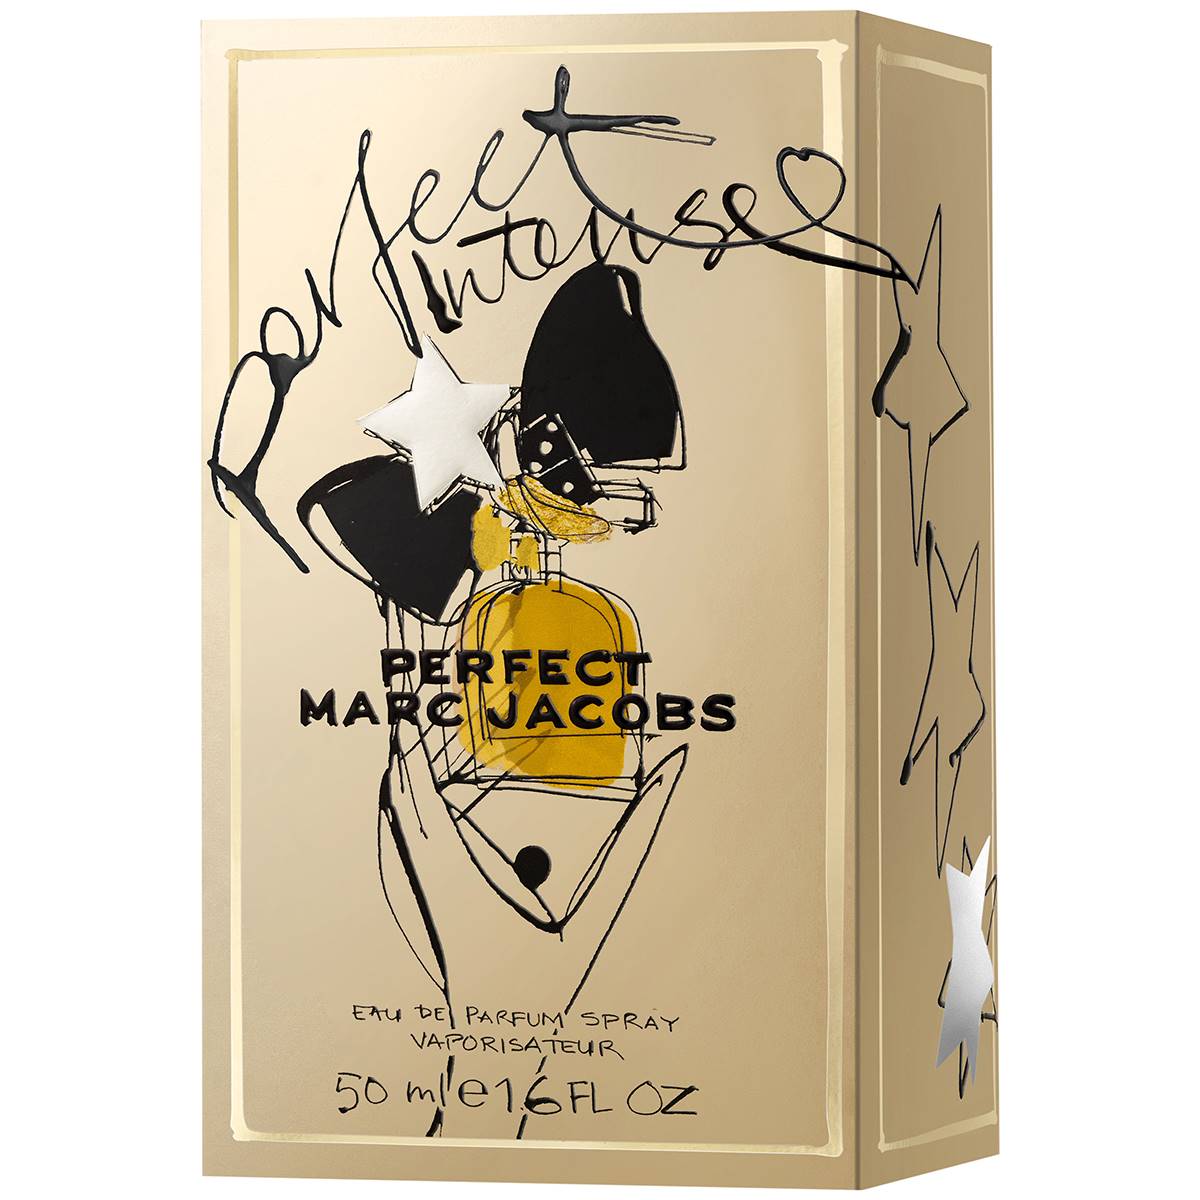 Marc Jacobs Perfect Intense Eau De Parfum